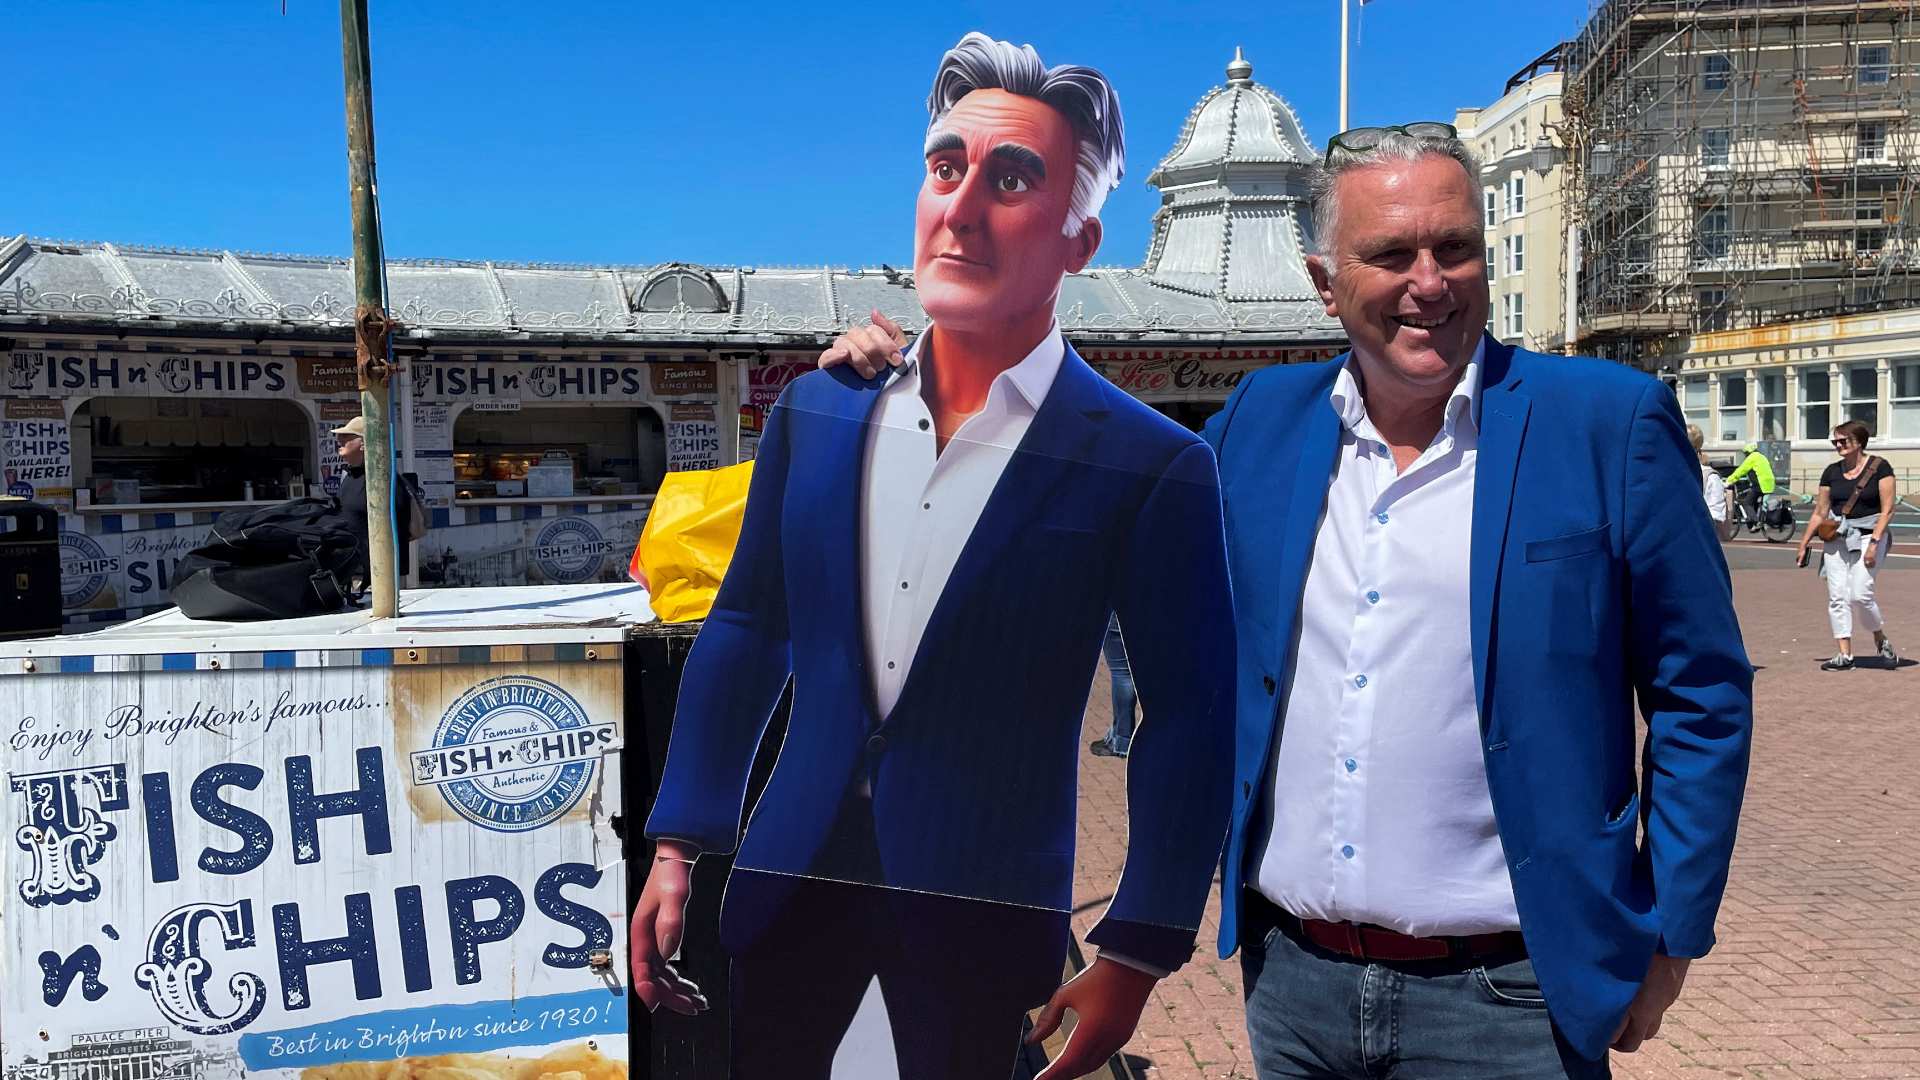 Steve Endacott, candidato independente na disputa eleitoral em Brighton, posa com seu avatar de IA em Brighton, sul do Reino Unido